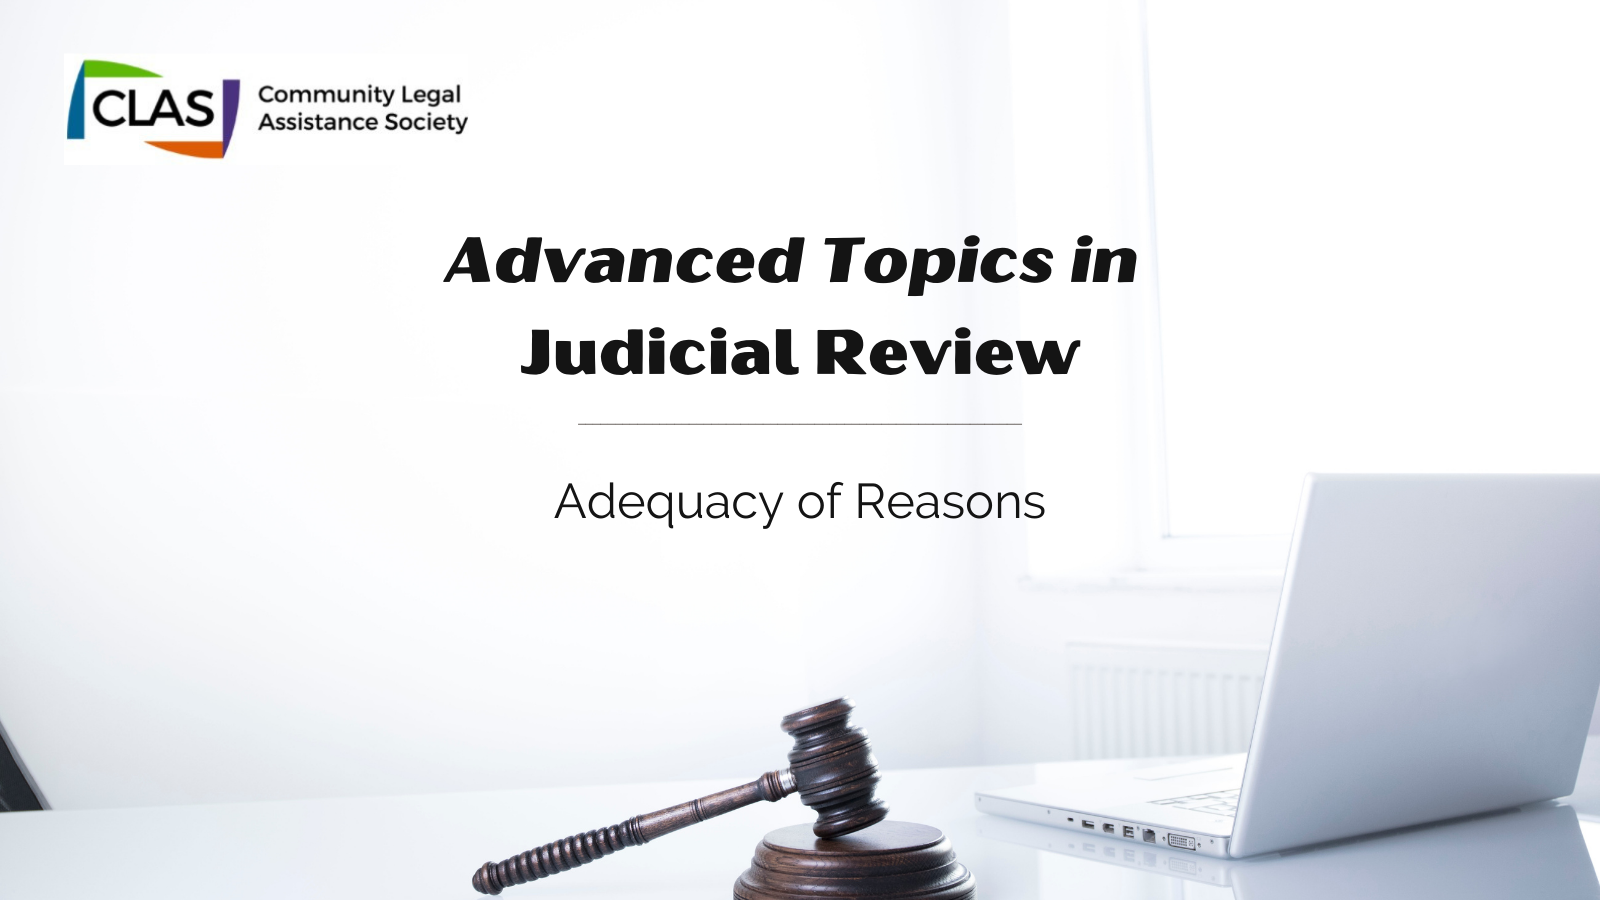 judicial review definition